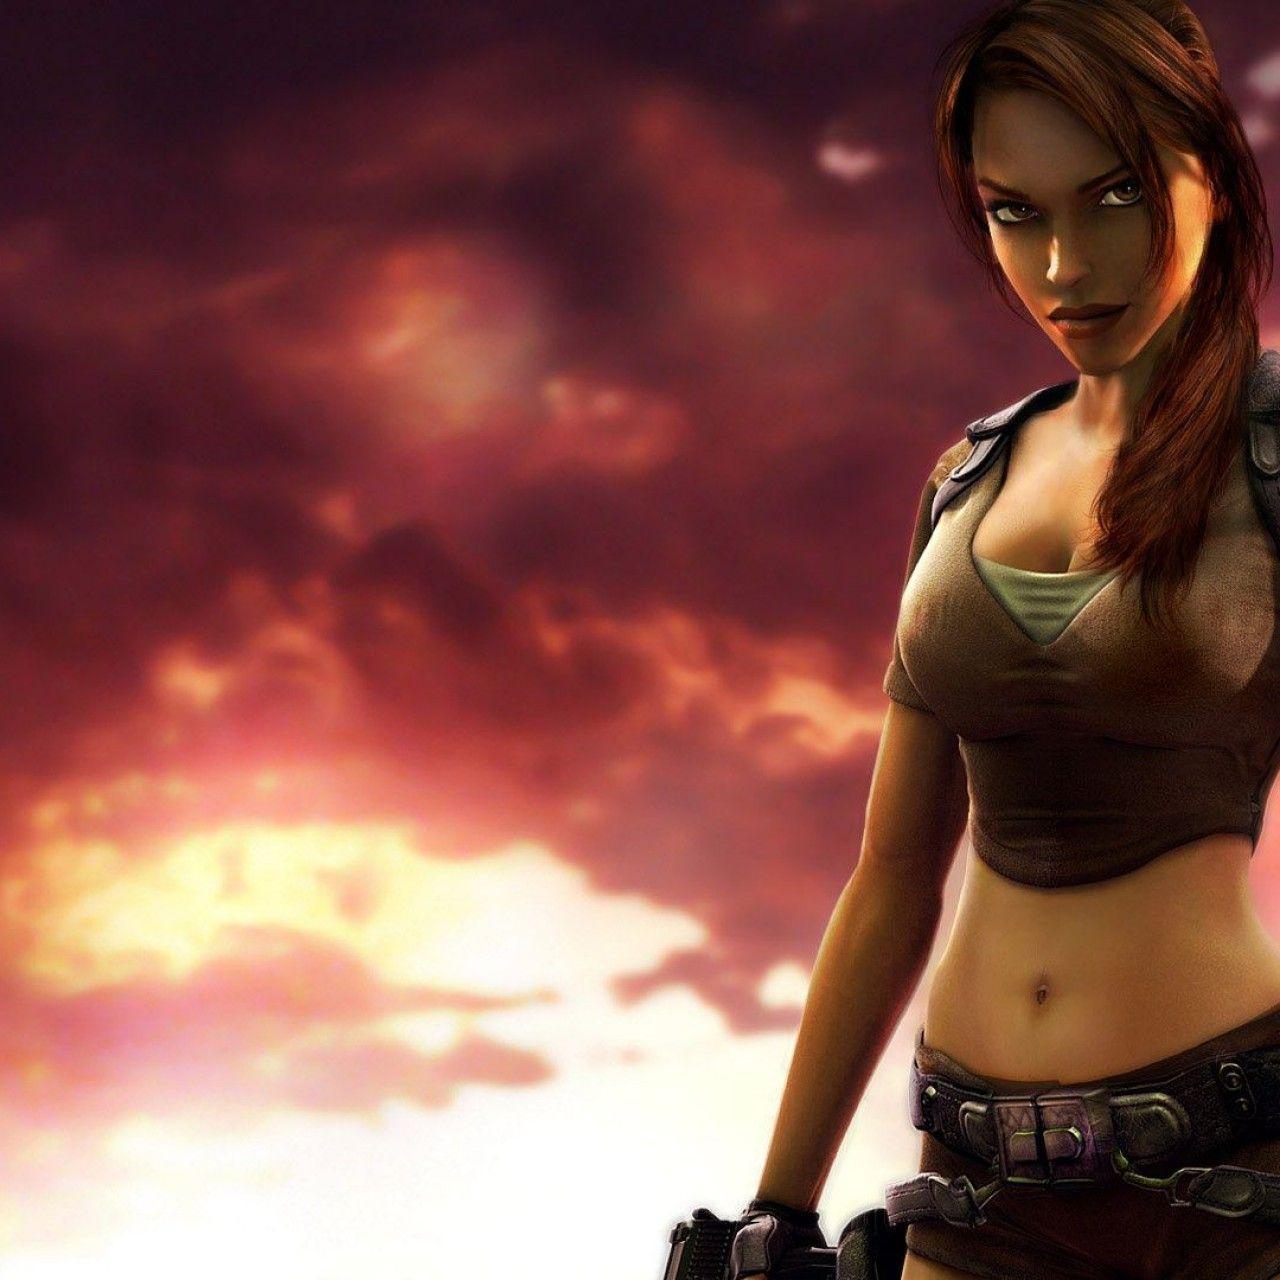 Beautiful Girl Lara Croft In Tomb Raider Game Wallpaper Desktop